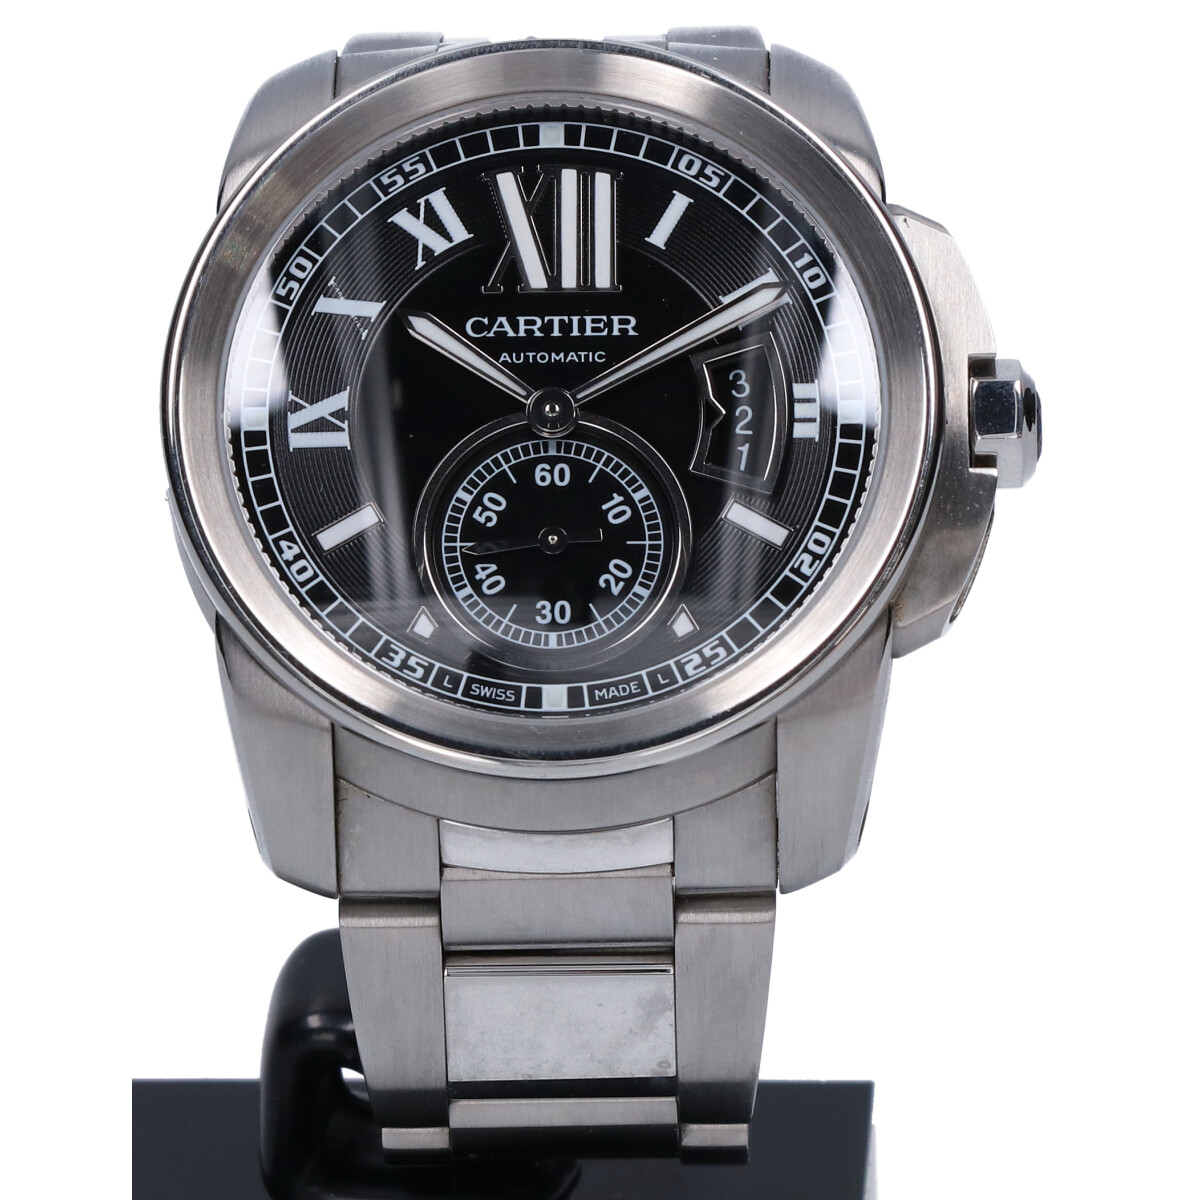 カルティエのW7100016 CALIBREカリブルドゥカルティエ バックスケルトン 自動巻 時計の買取実績です。